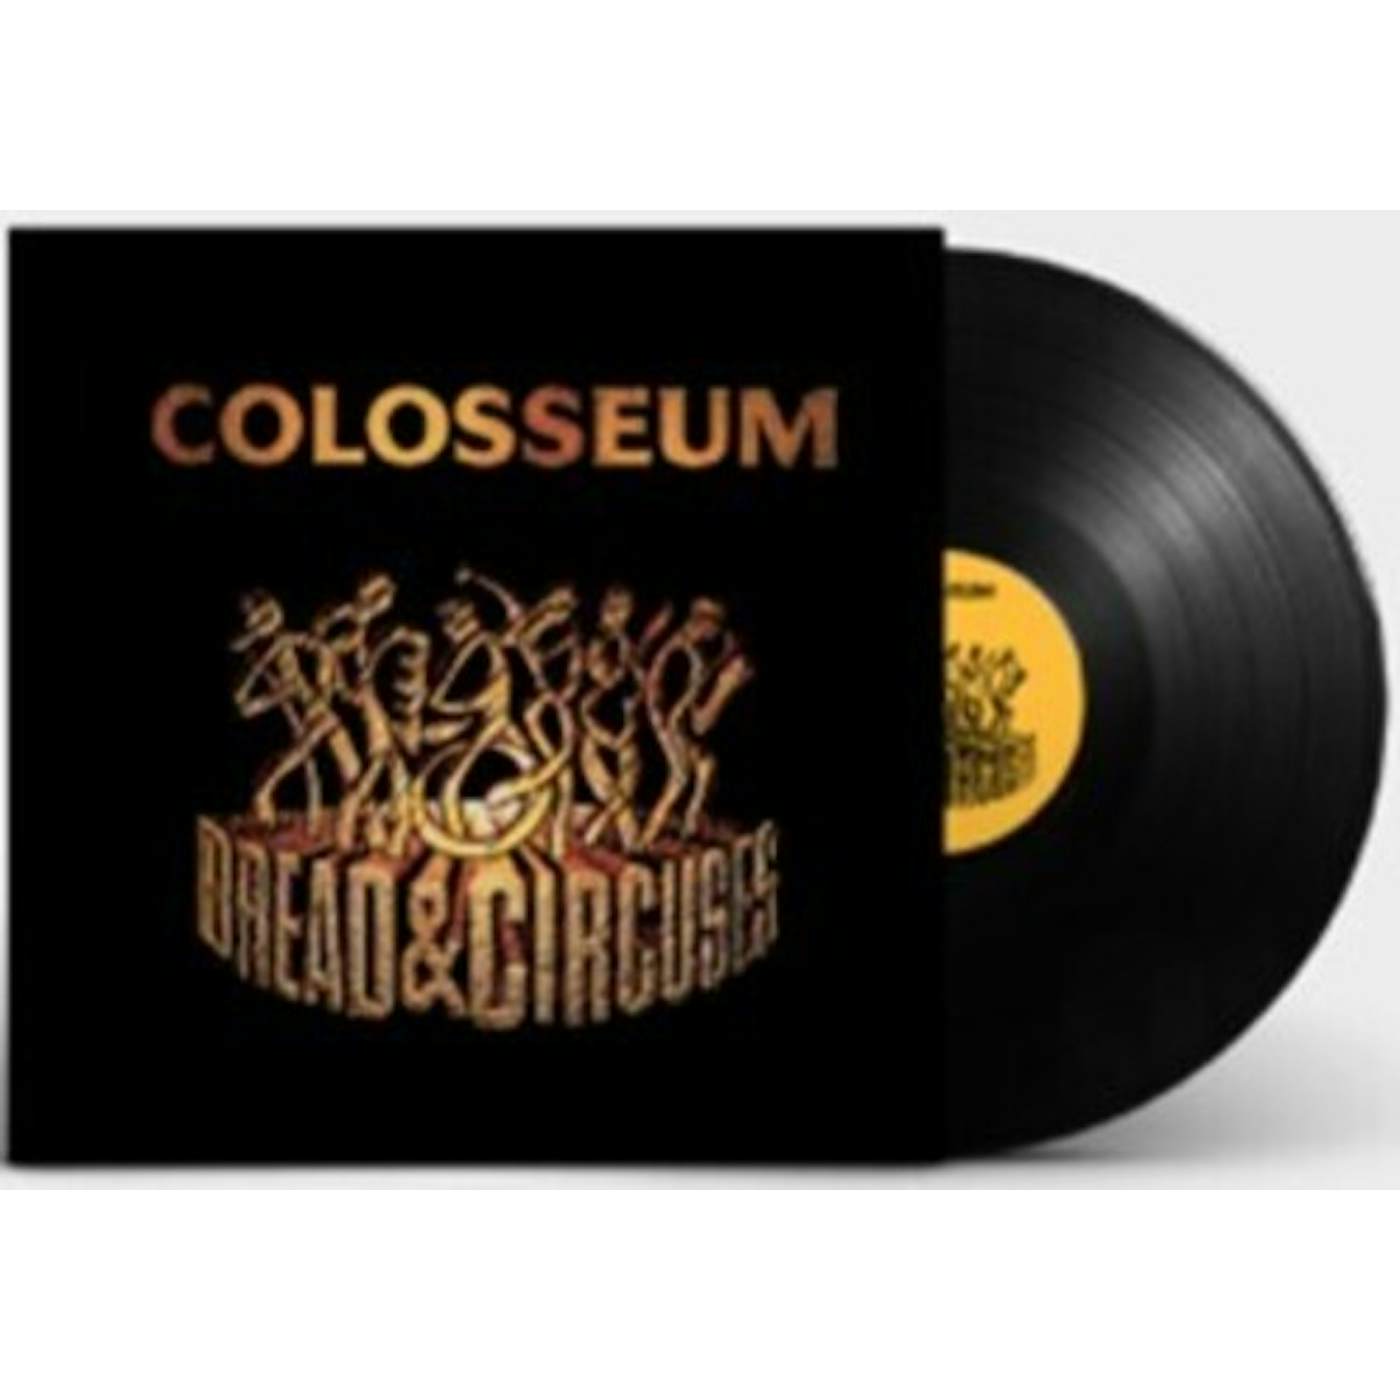 Colosseum Bread & Circuses Vinyl Record